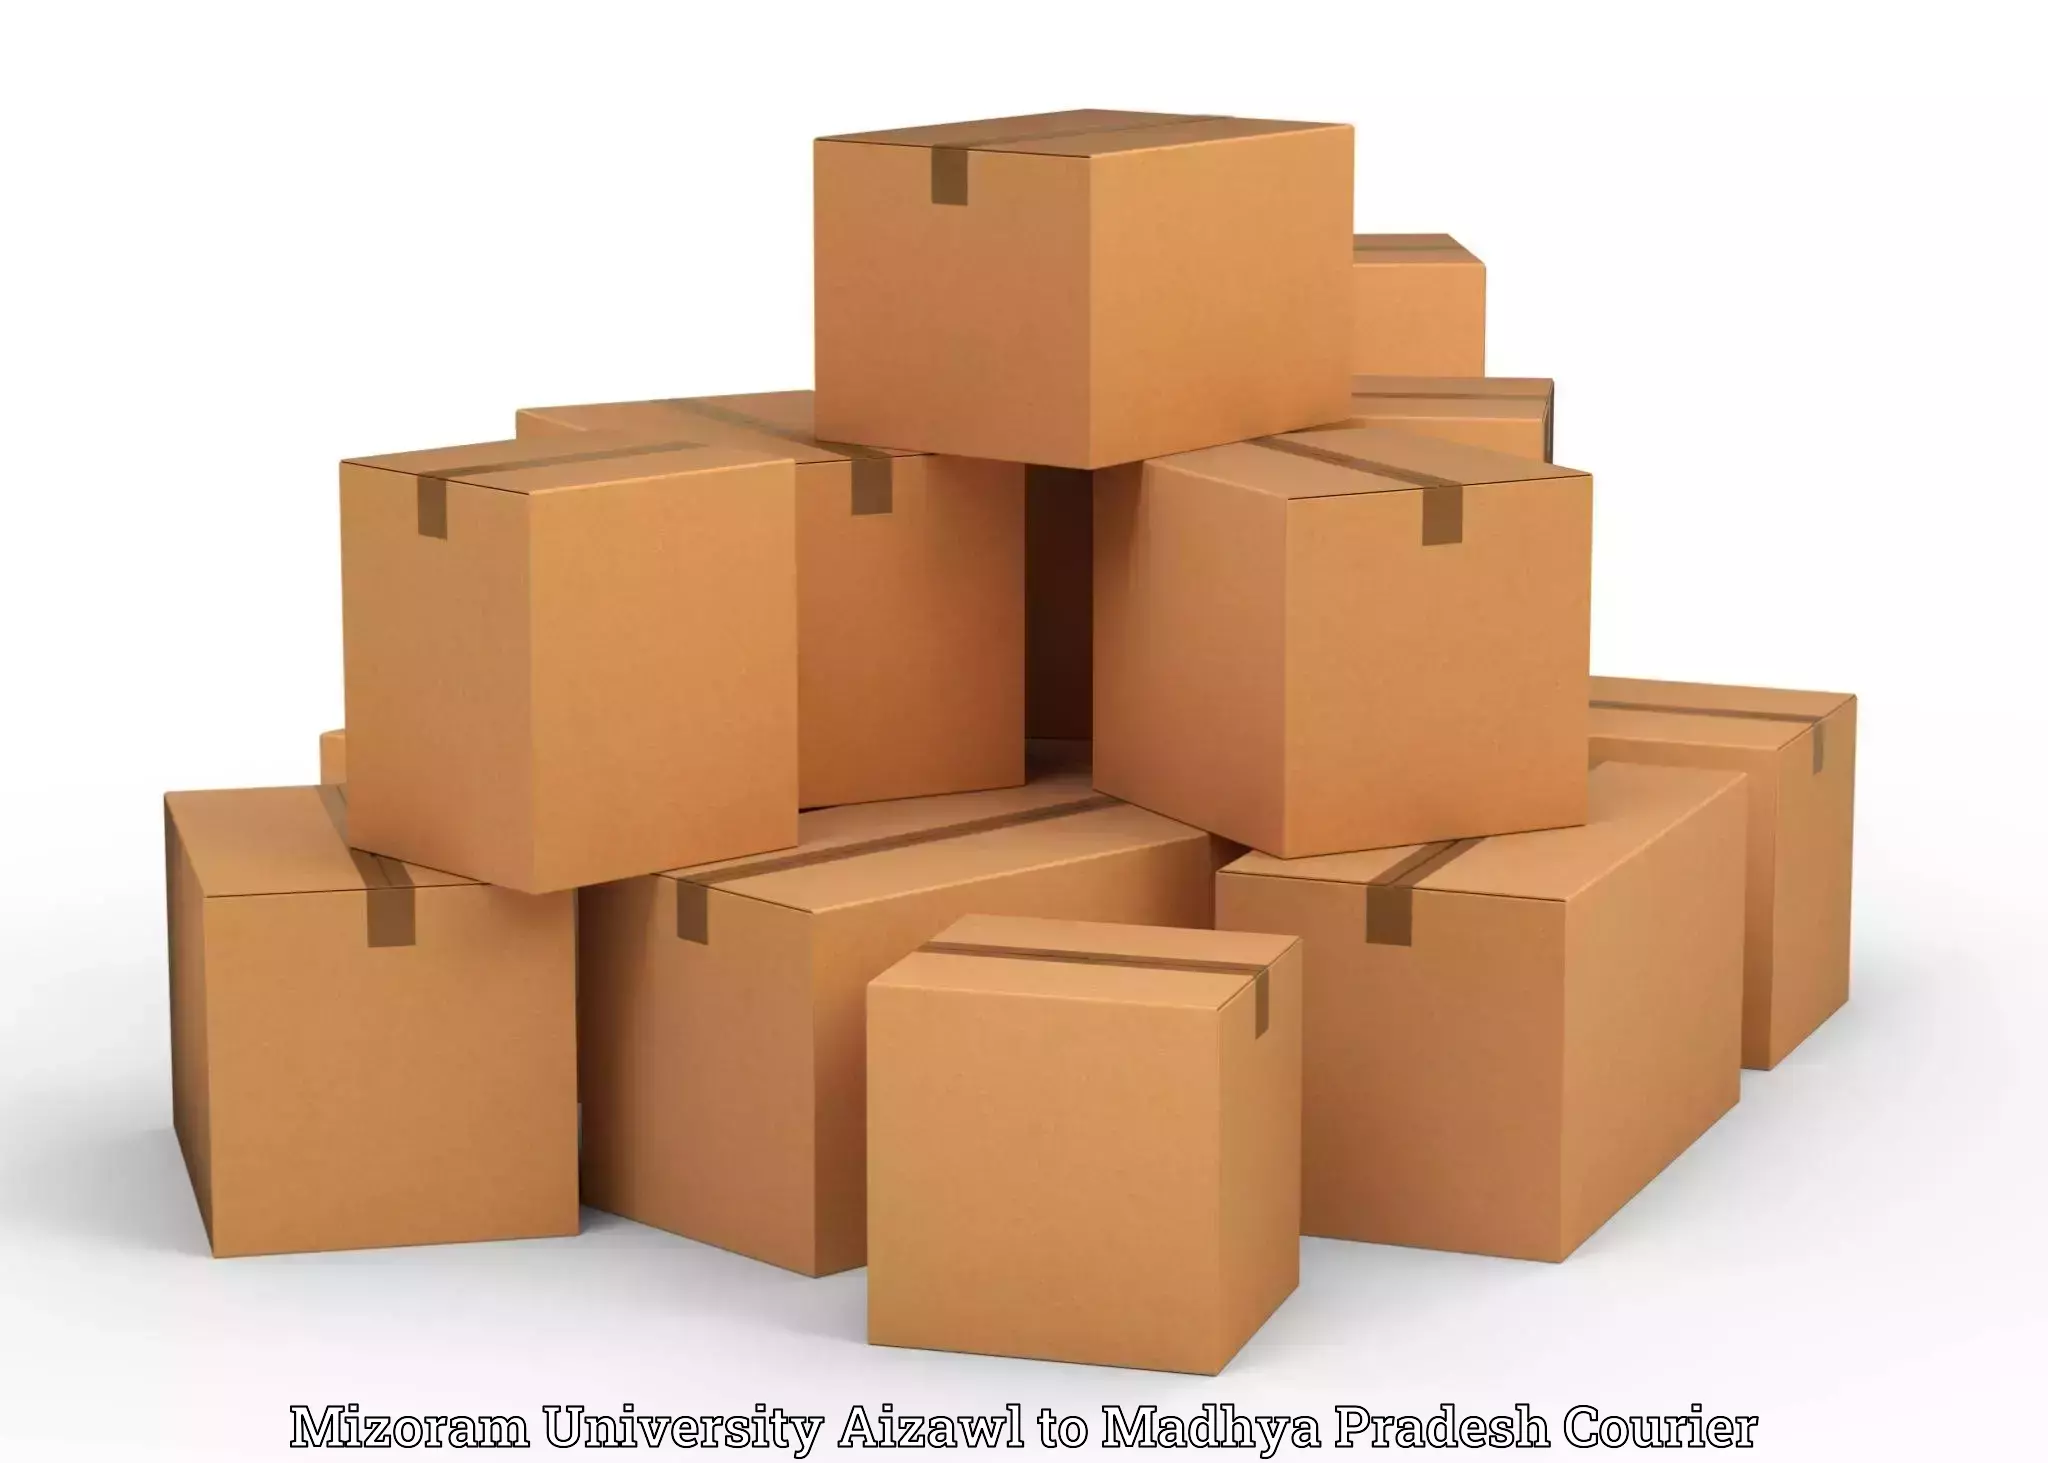 Professional packing services Mizoram University Aizawl to Hoshangabad